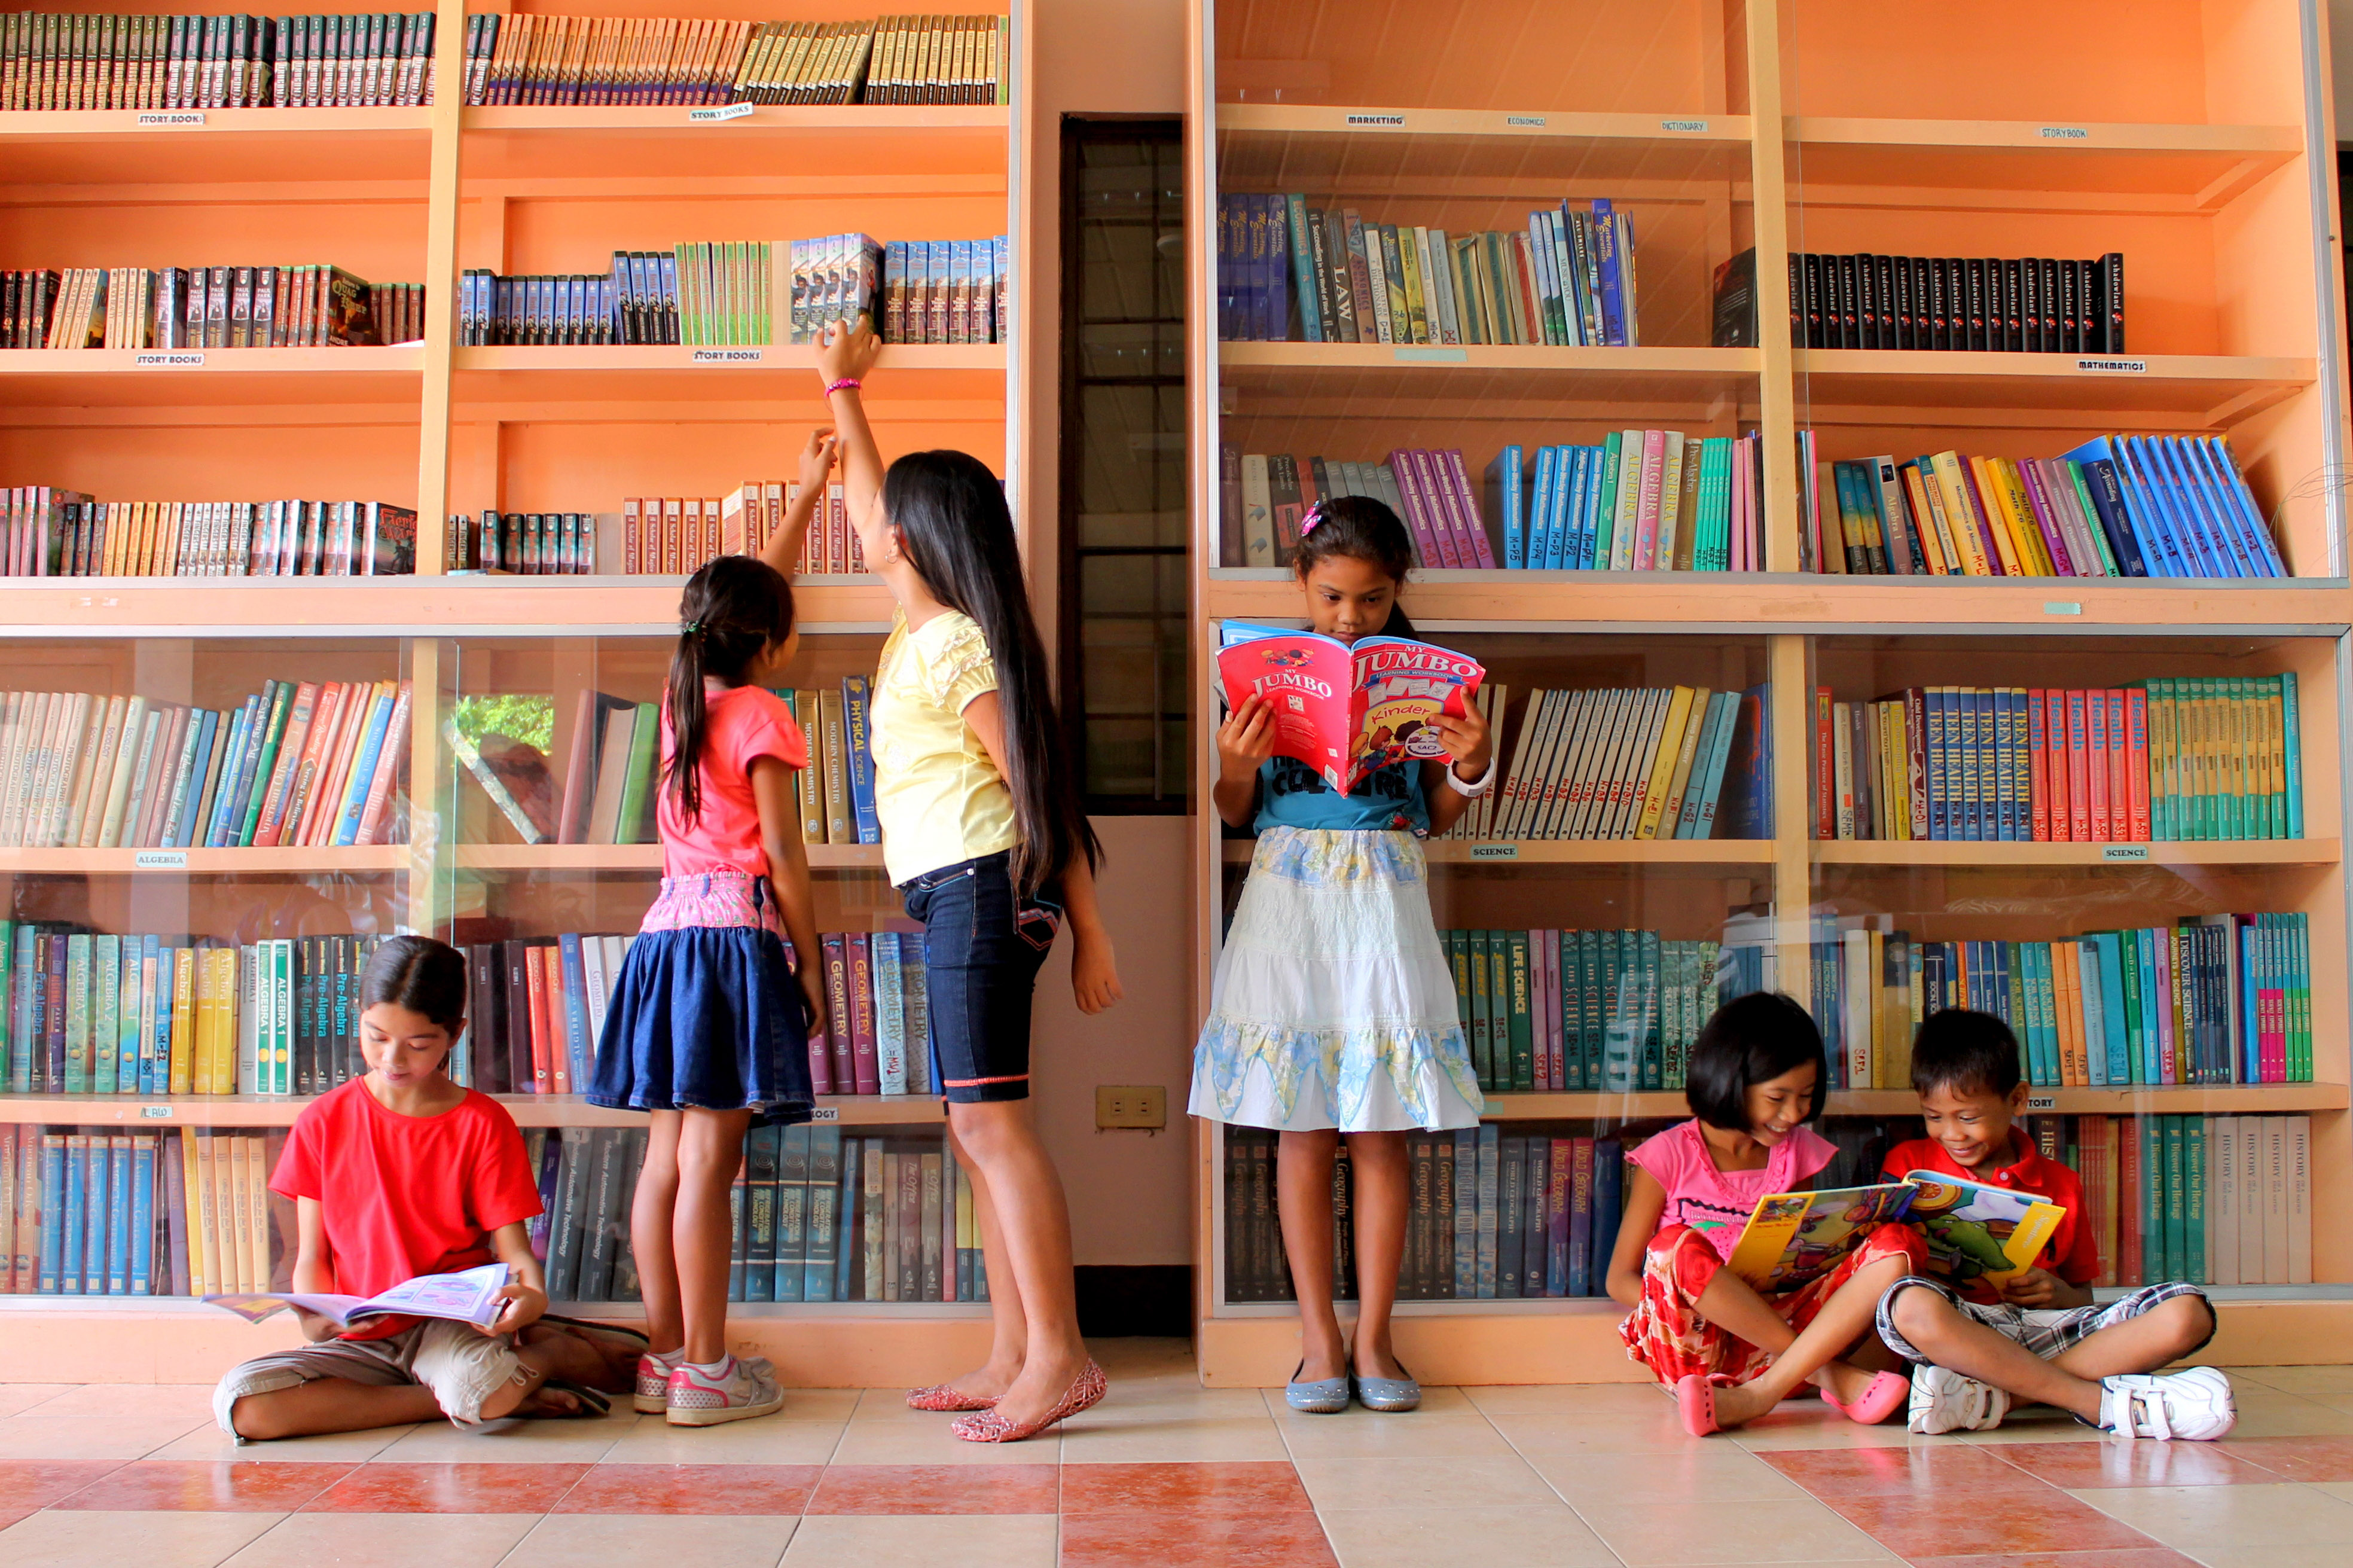 Инн детской библиотеки. Фотосессия в библиотеке дети. Дети в библиотеке. Здание библиотеки для детей. Детские библиотеки.